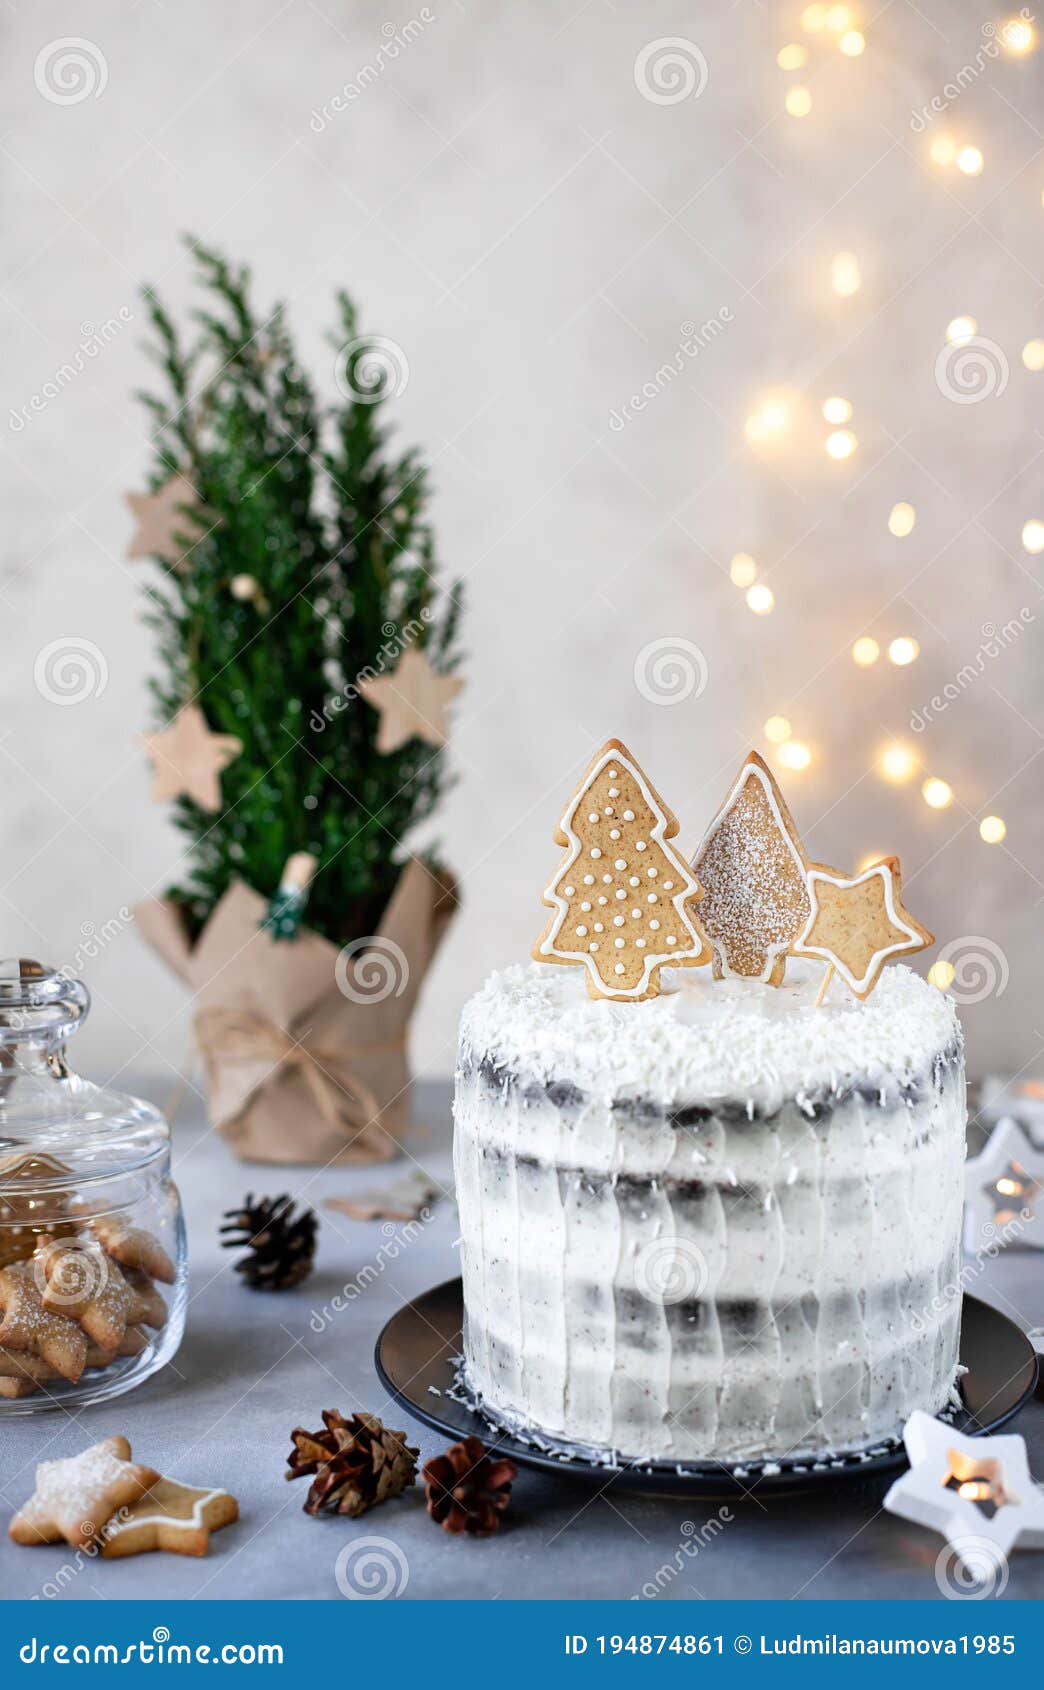 Pains, Pâtisseries, Gâteau De Noël Sur Le Fond En Bois Avec Des